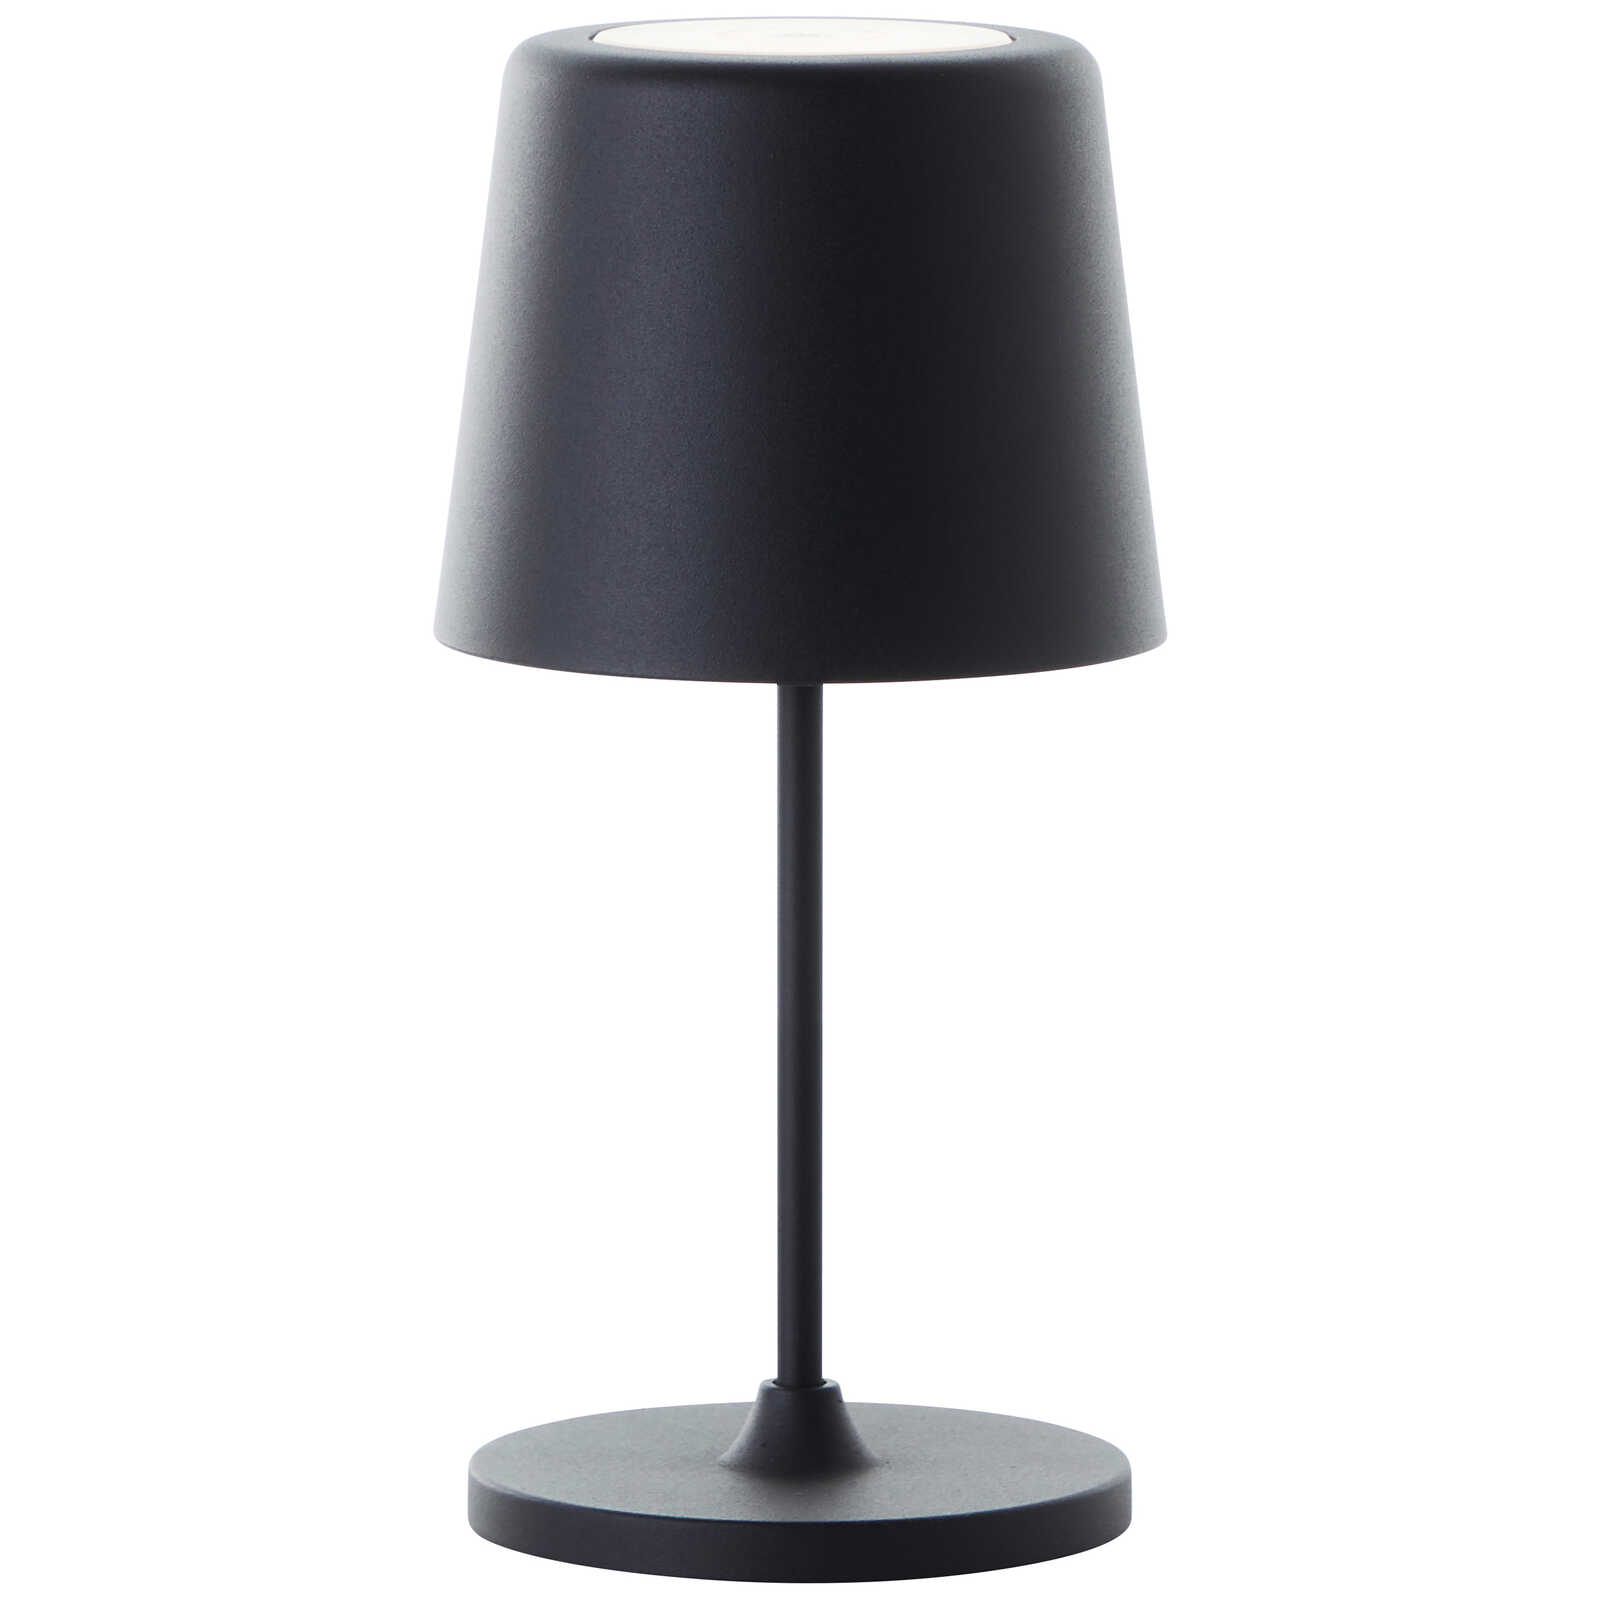             Metalen tafellamp - Cosy 6 - Zwart
        